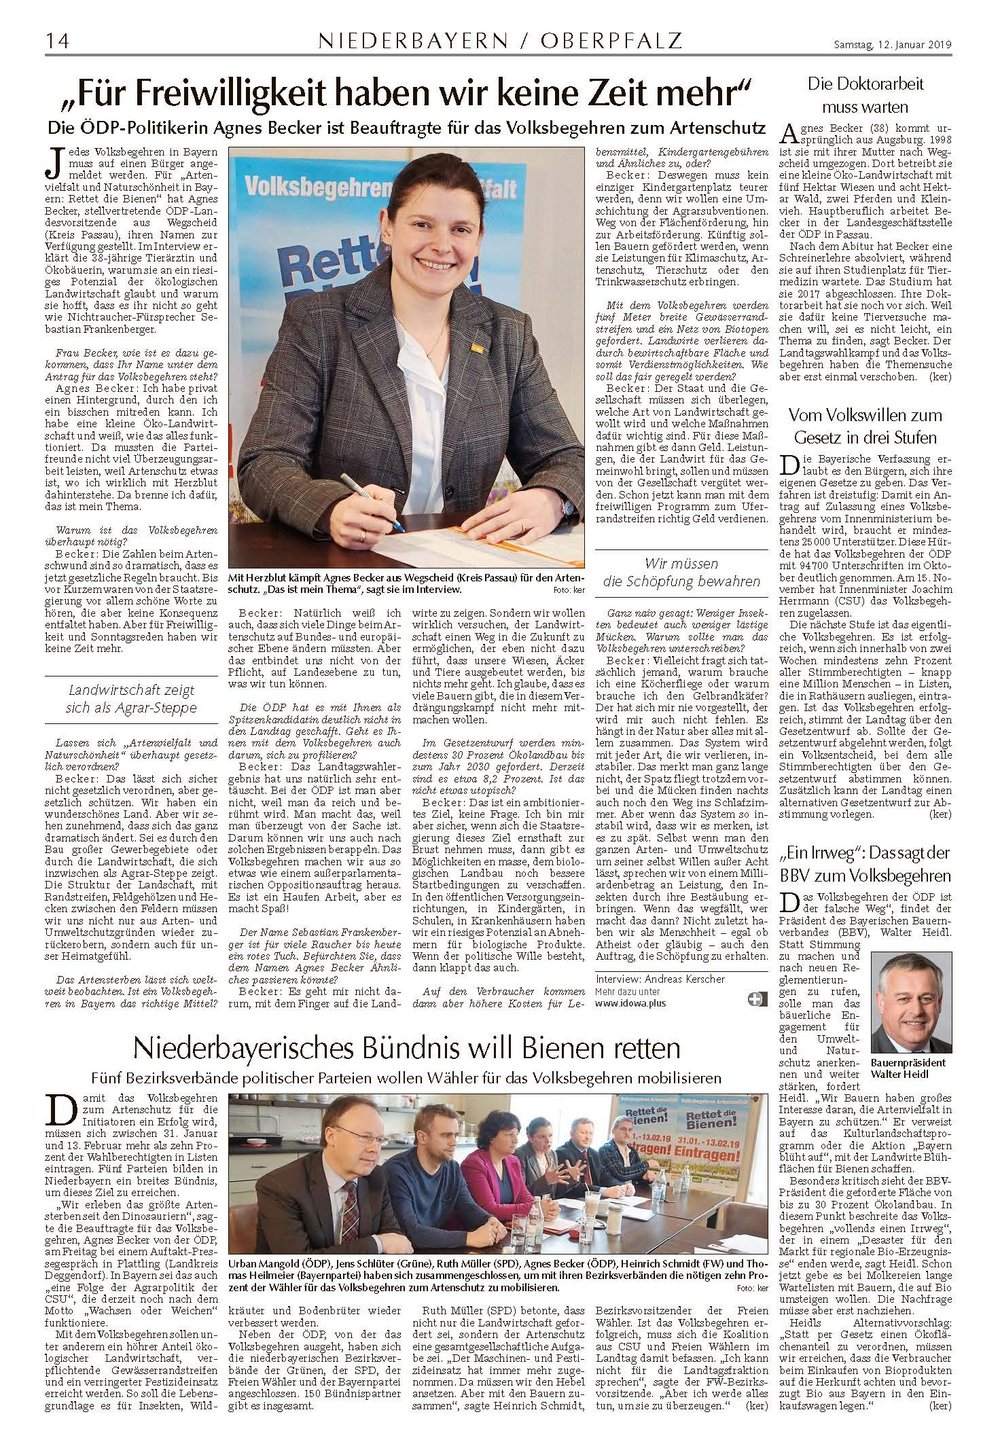 Bericht im Straubinger Tagblatt zum Volksbegehren